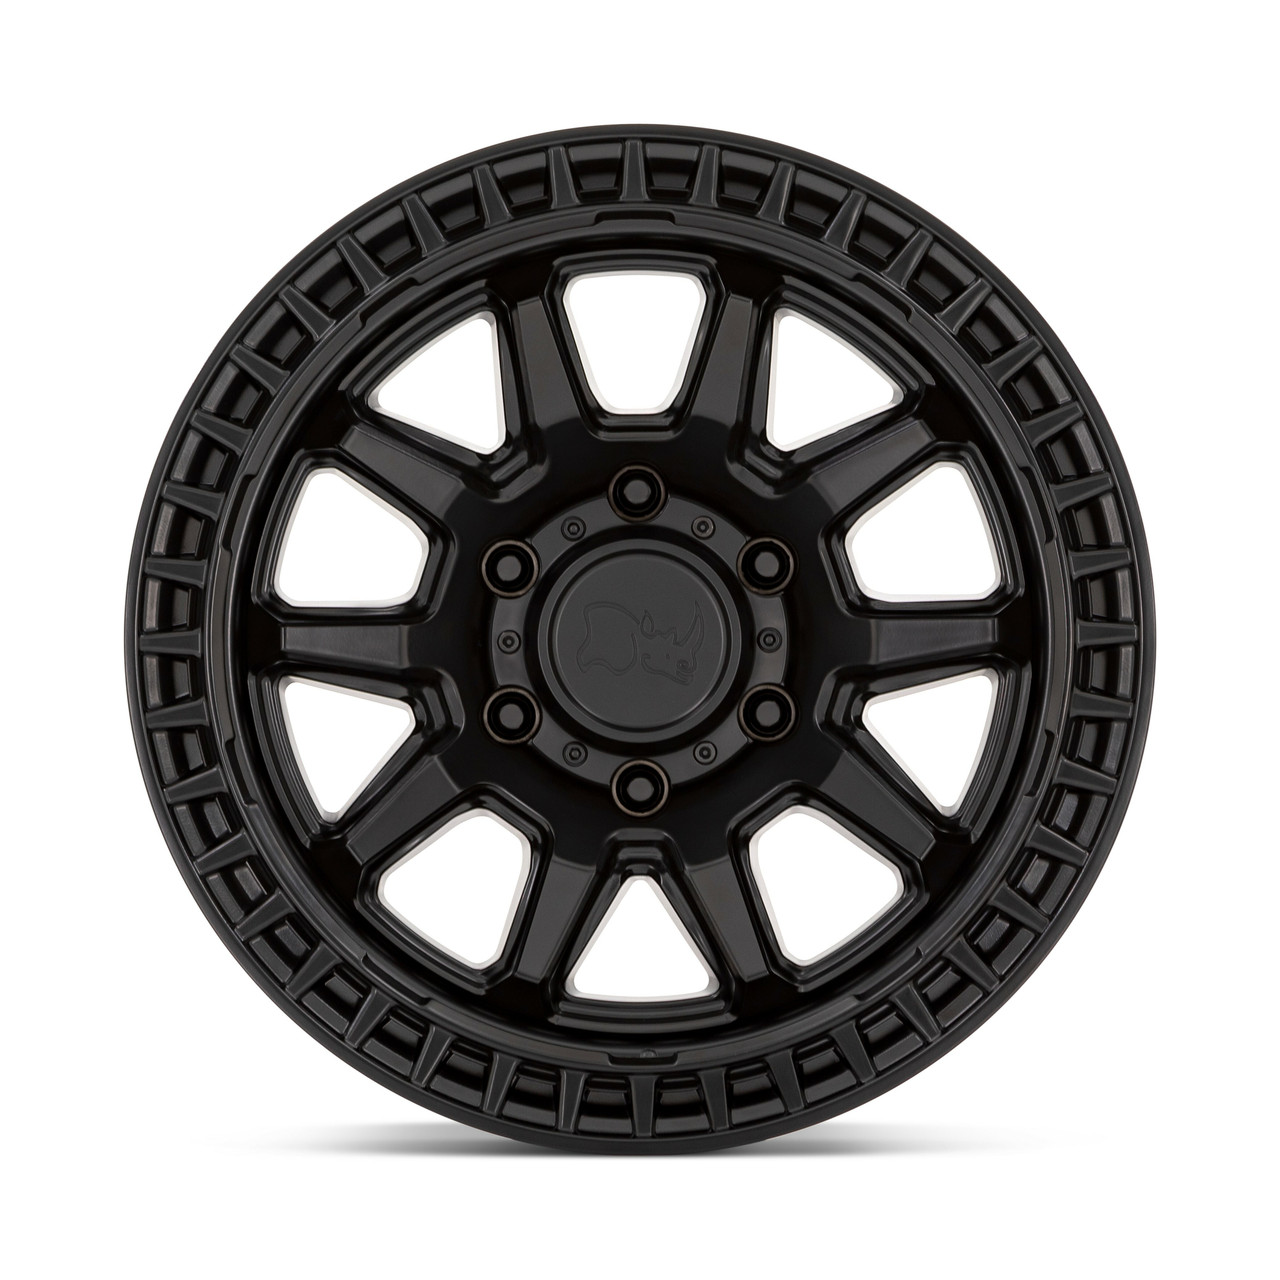 Black Rhino Calico 17x8.5 6x135 Matte Black Wheel 17" 0mm For Ford Lincoln Rim